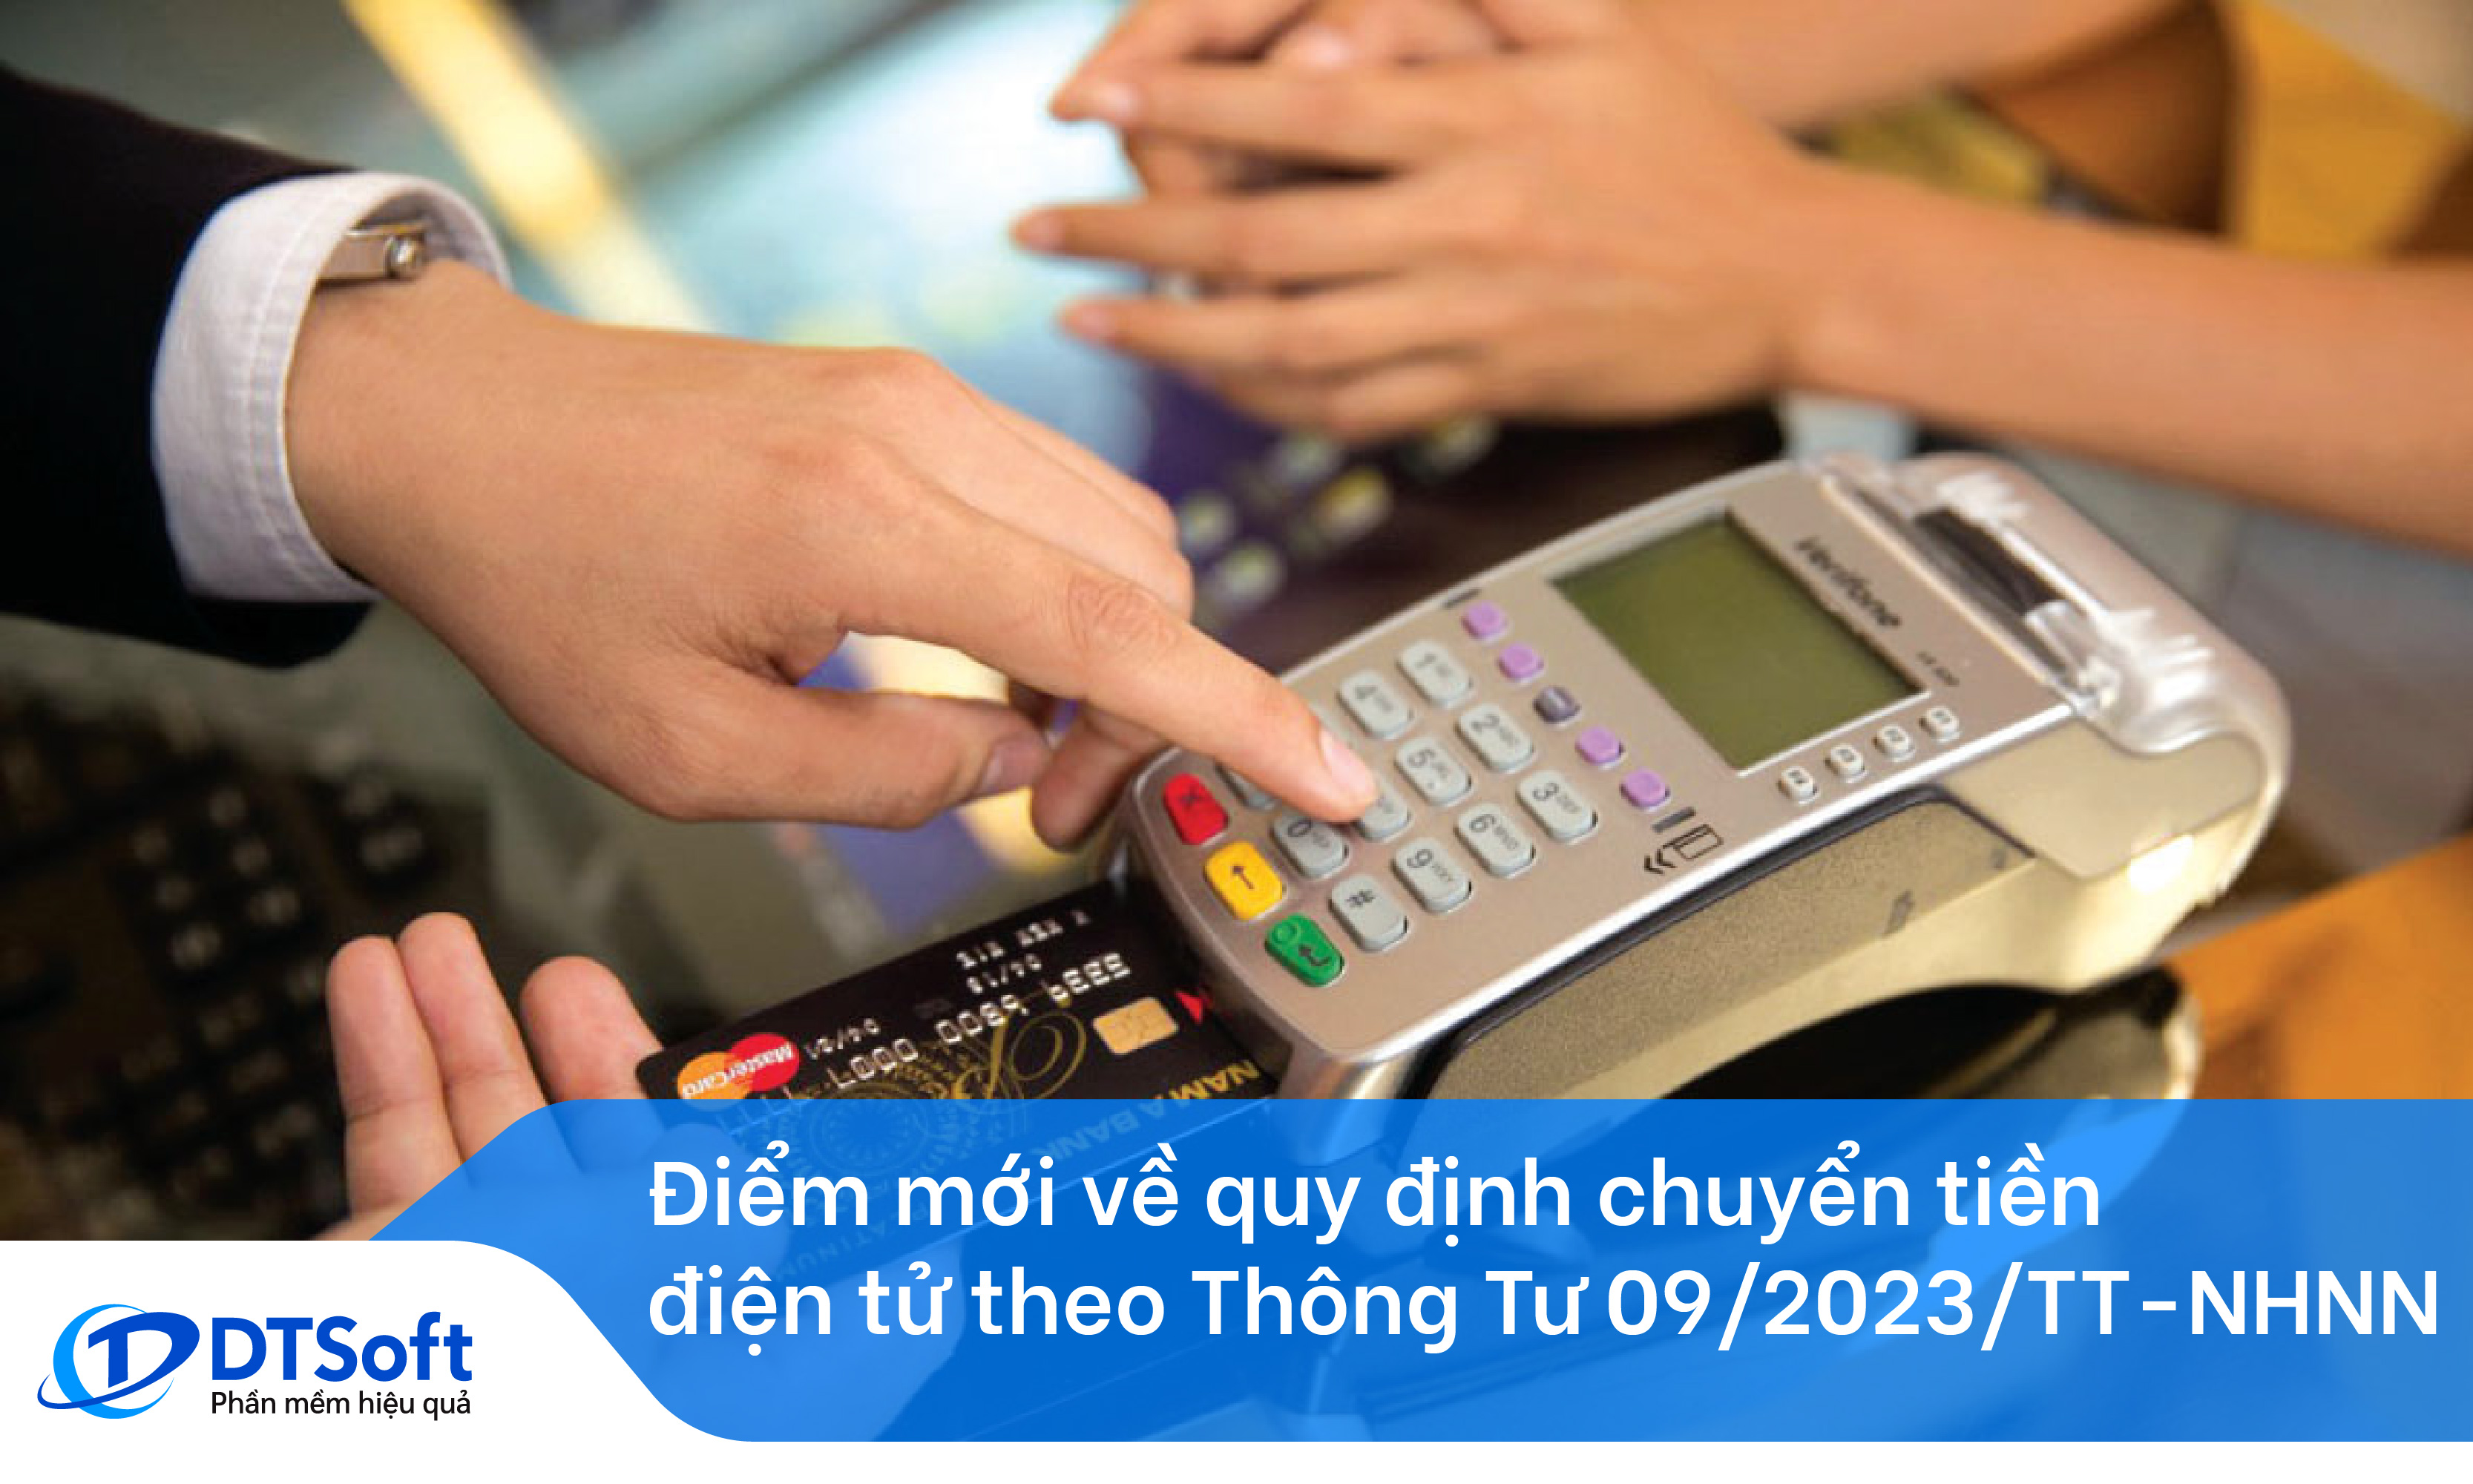 Điểm mới về quy định chuyển tiền điện tử theo Thông Tư 09/2023/TT-NHNN